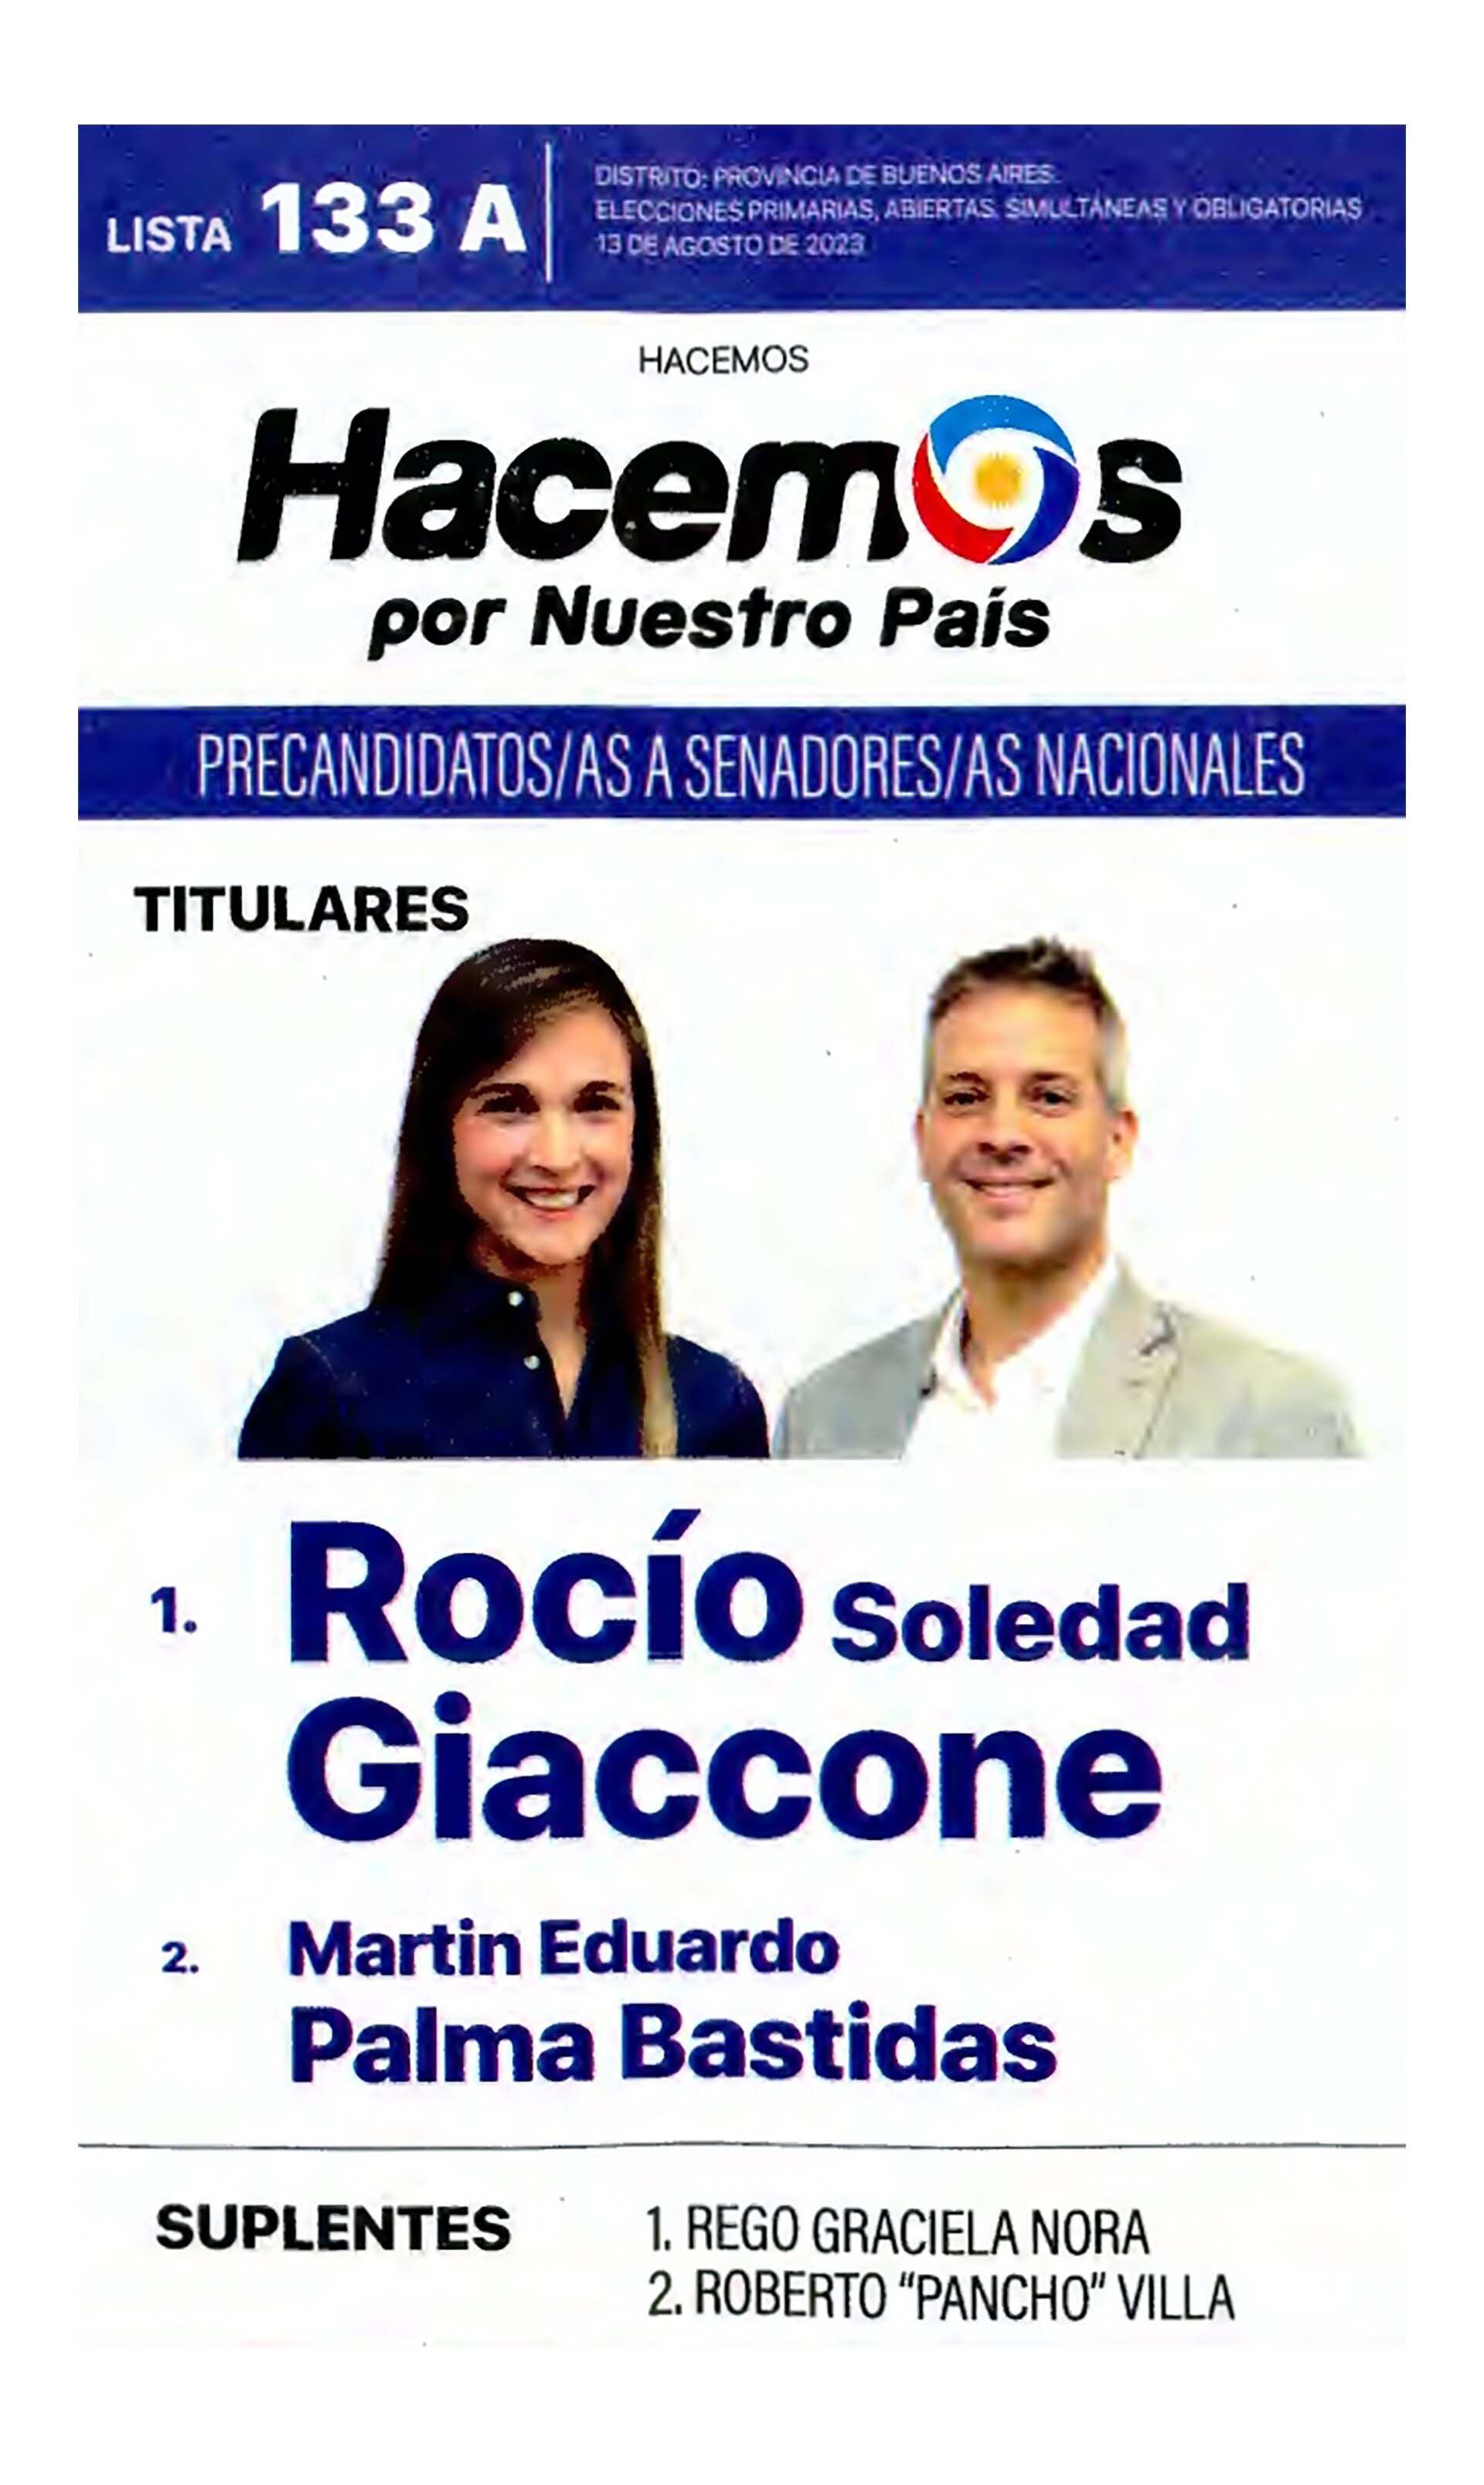 La boleta oficial de "Hacemos por Nuestro País" de precandidatos a senadores nacionales de Buenos Aires